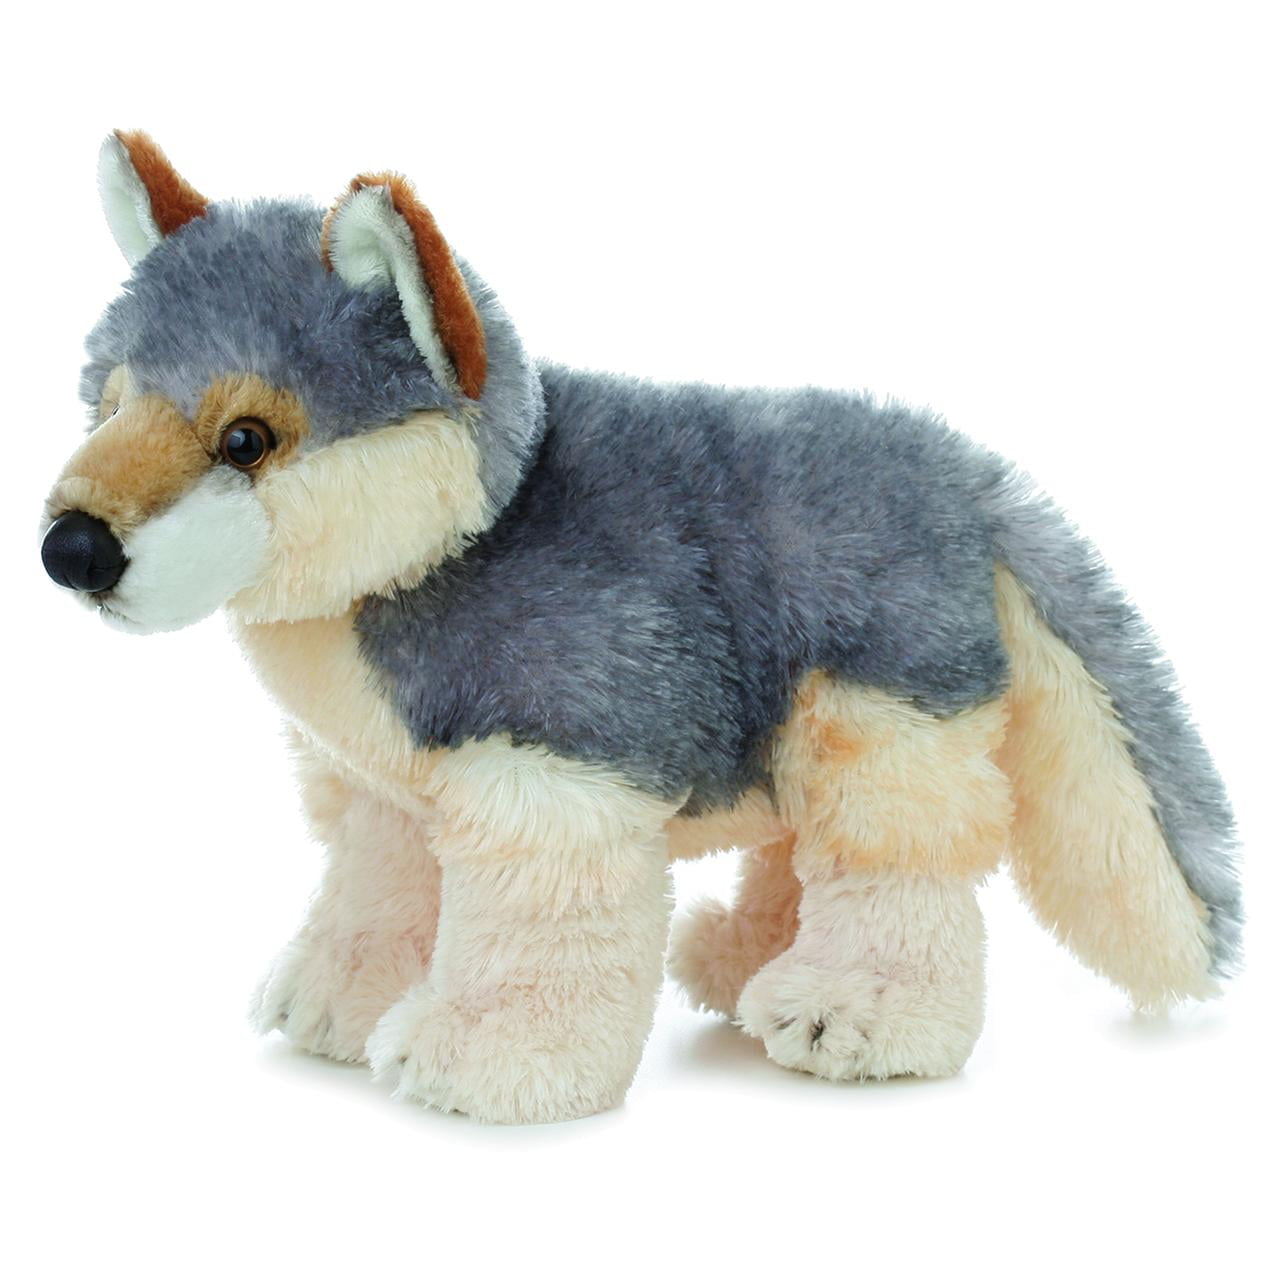 Flopsie - New Stuffed Animal Toy 12 inch Aurora World Plush WILY the Wolf 